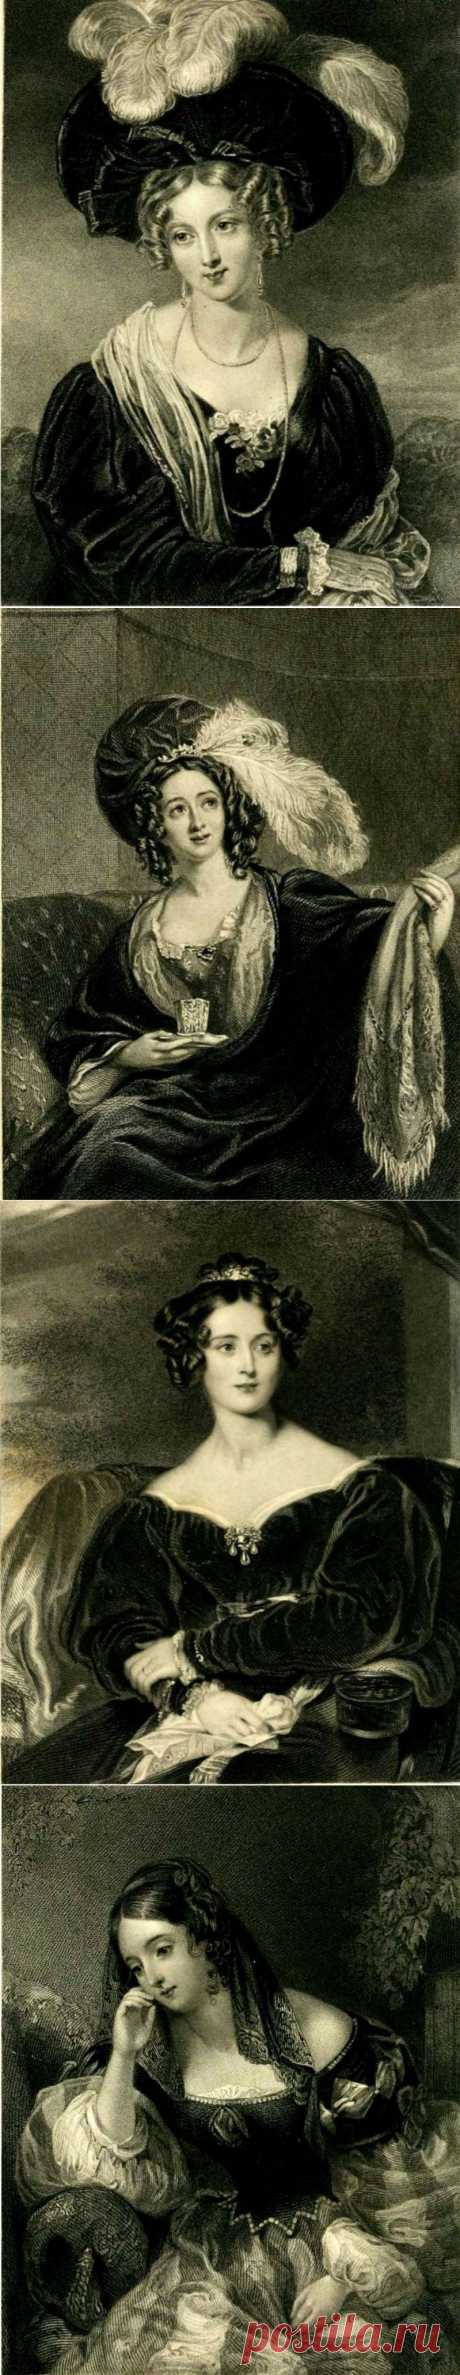 Гравюры из &quot;Книги красоты&quot; 1835 года, которые были предшественниками Женских журналов моды.